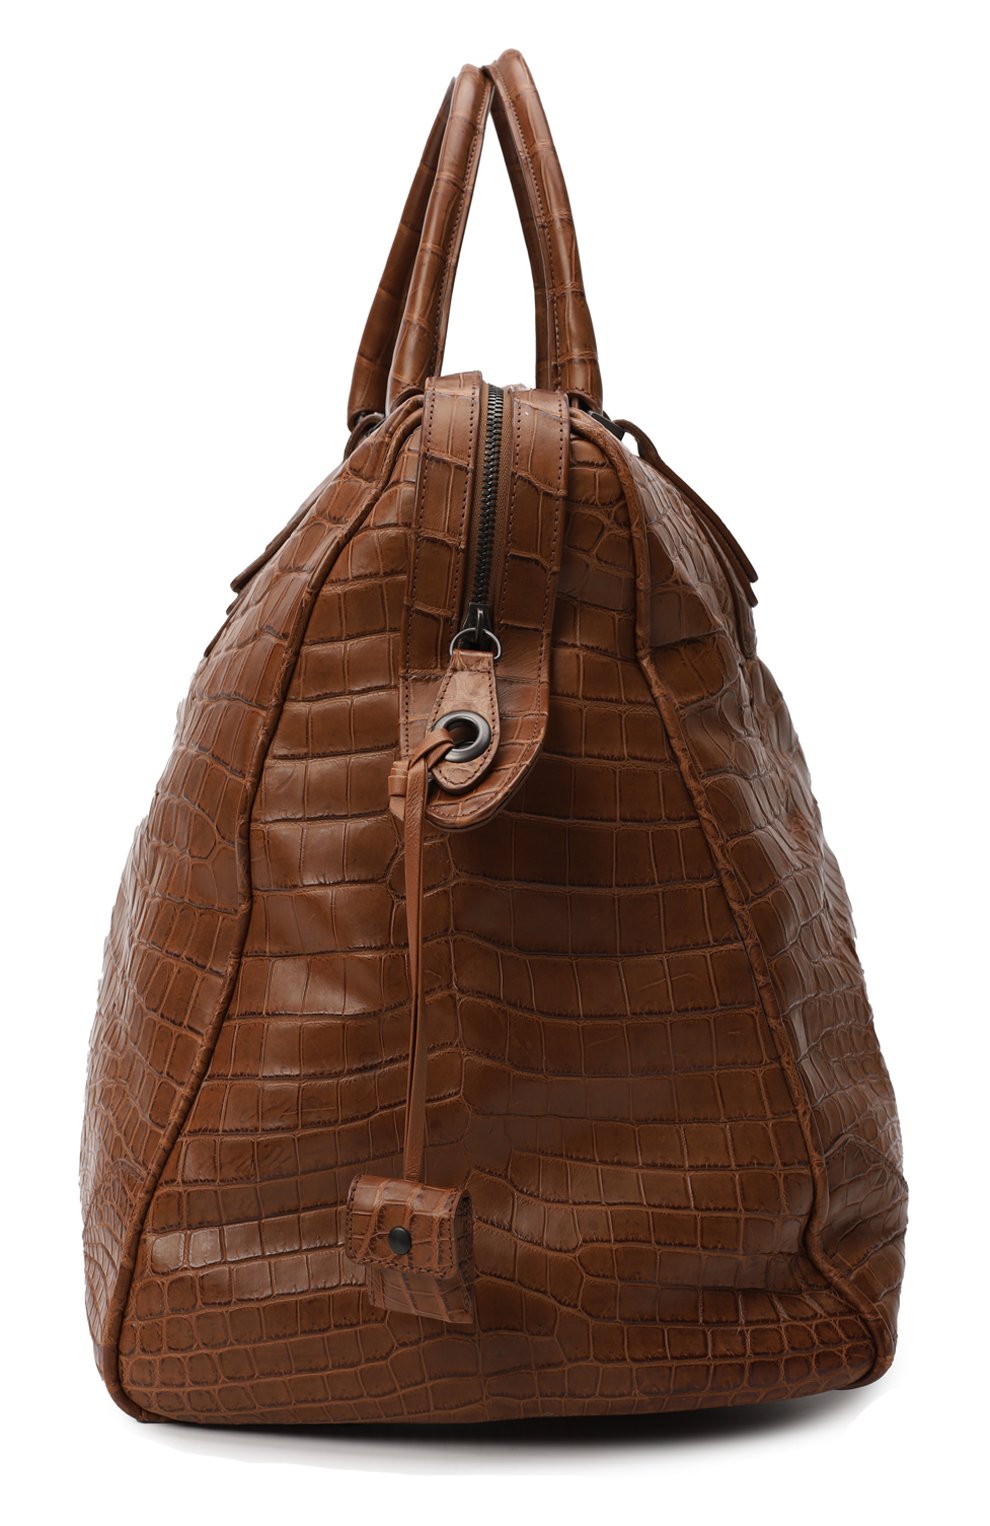 Дорожная сумка из кожи крокодила | Bottega Veneta | Коричневый - 4